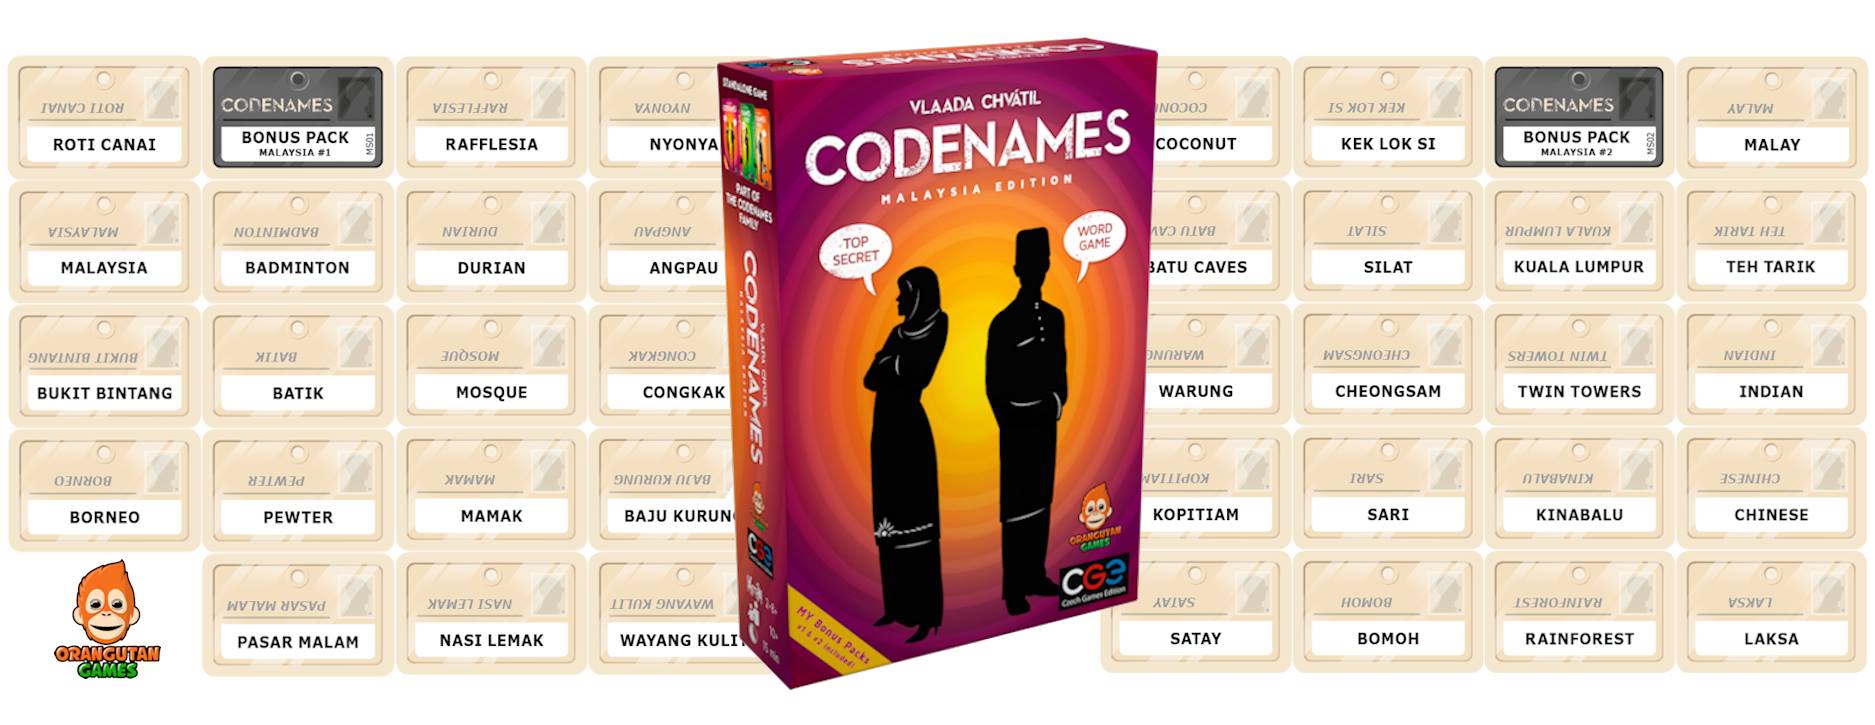 Malaysian card and board games - Codenames (2)